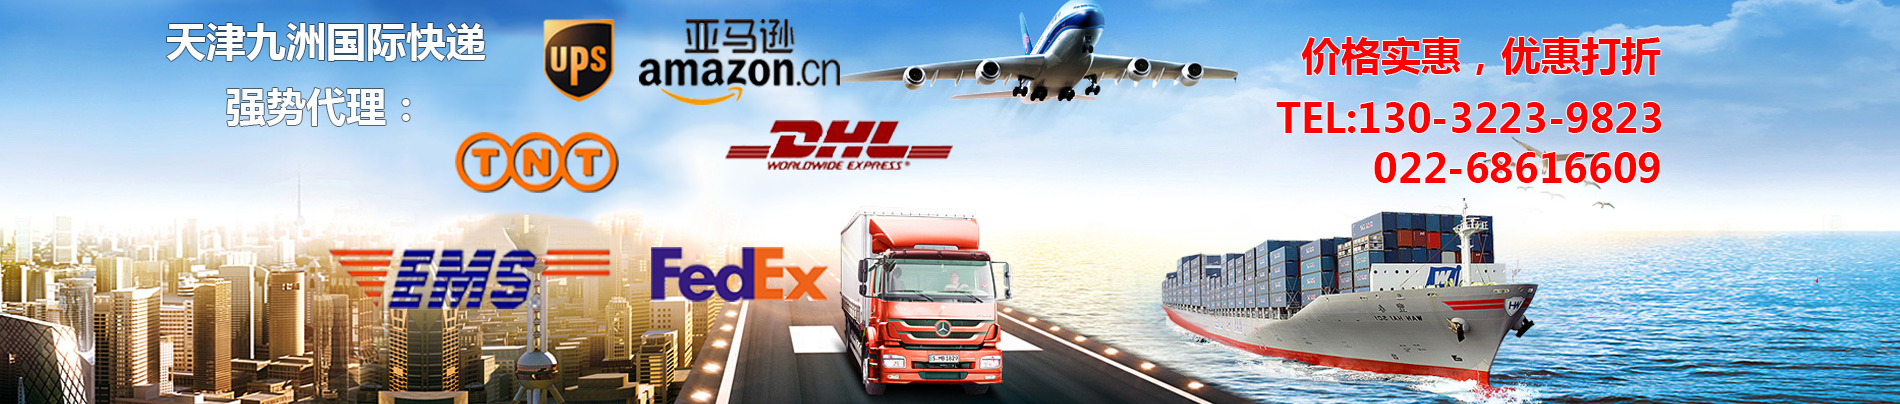 天津DHL国际快递,天津DHL国际快递公司,天津DHL国际包裹